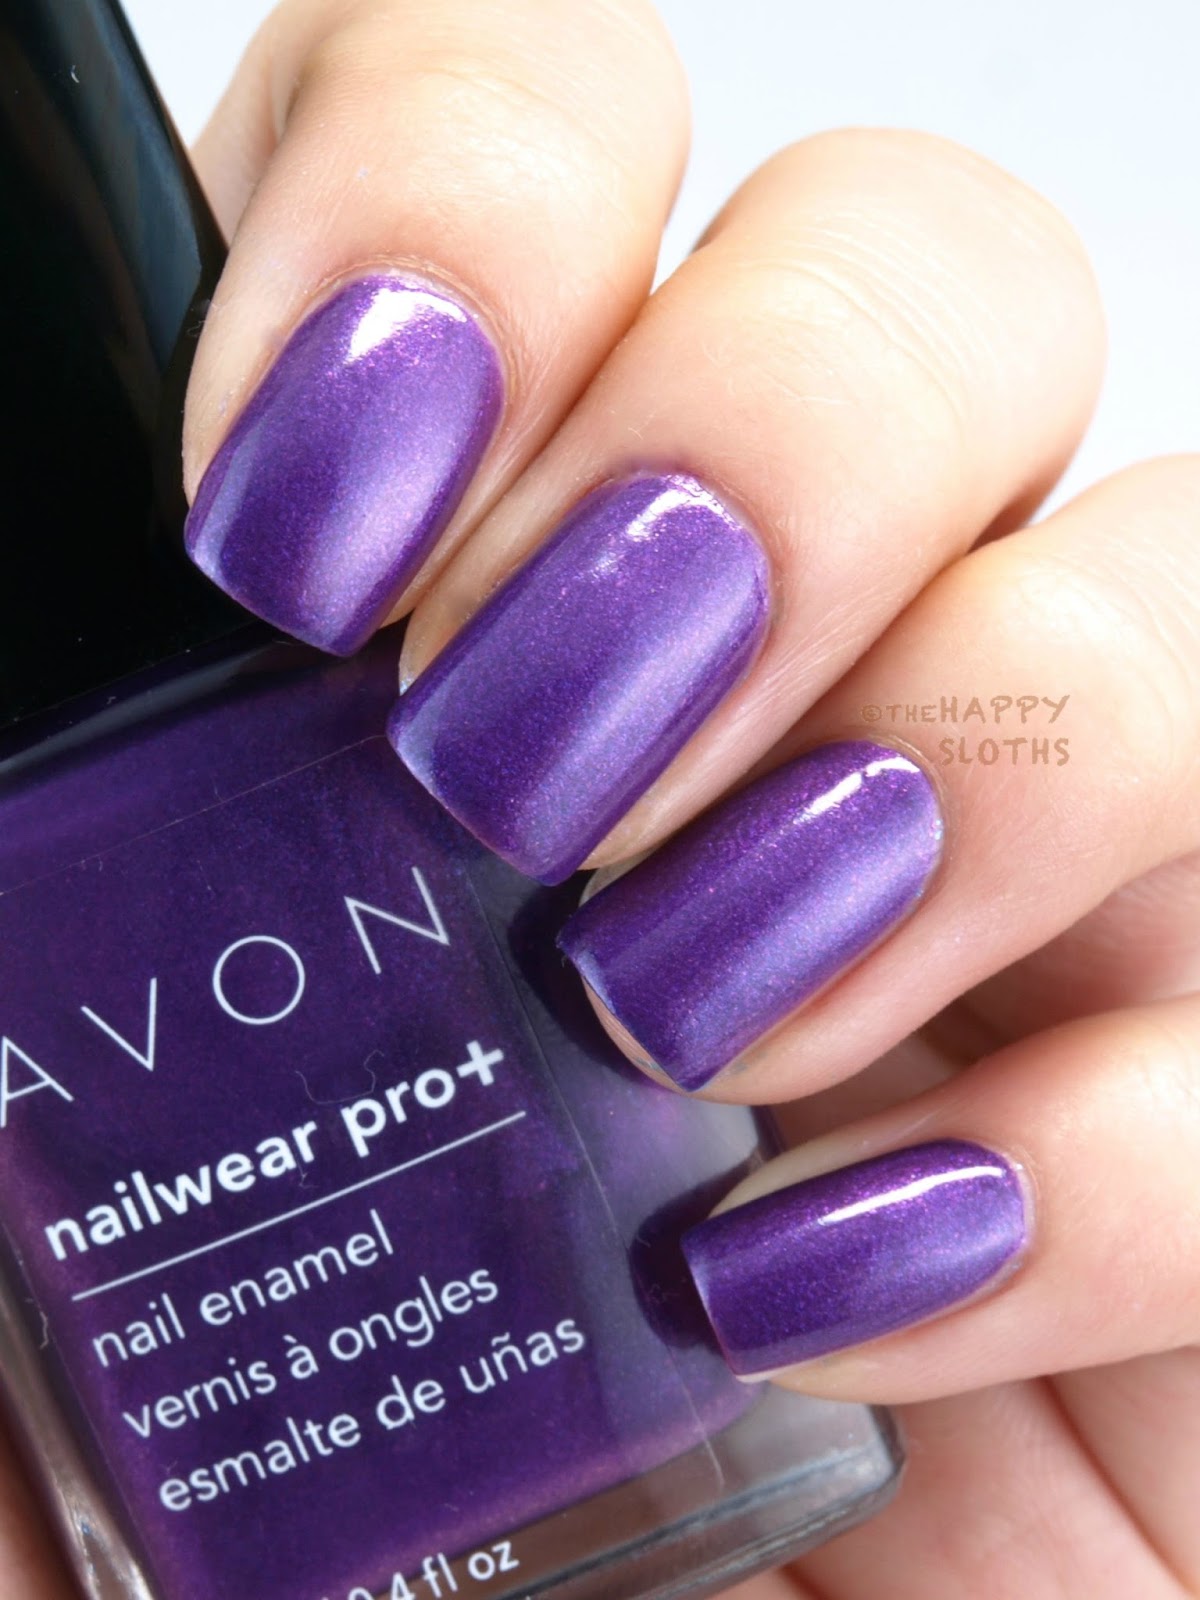 Avon Nailwear PRO+ Nail Enamel **Beauty & Avon Online** | eBay